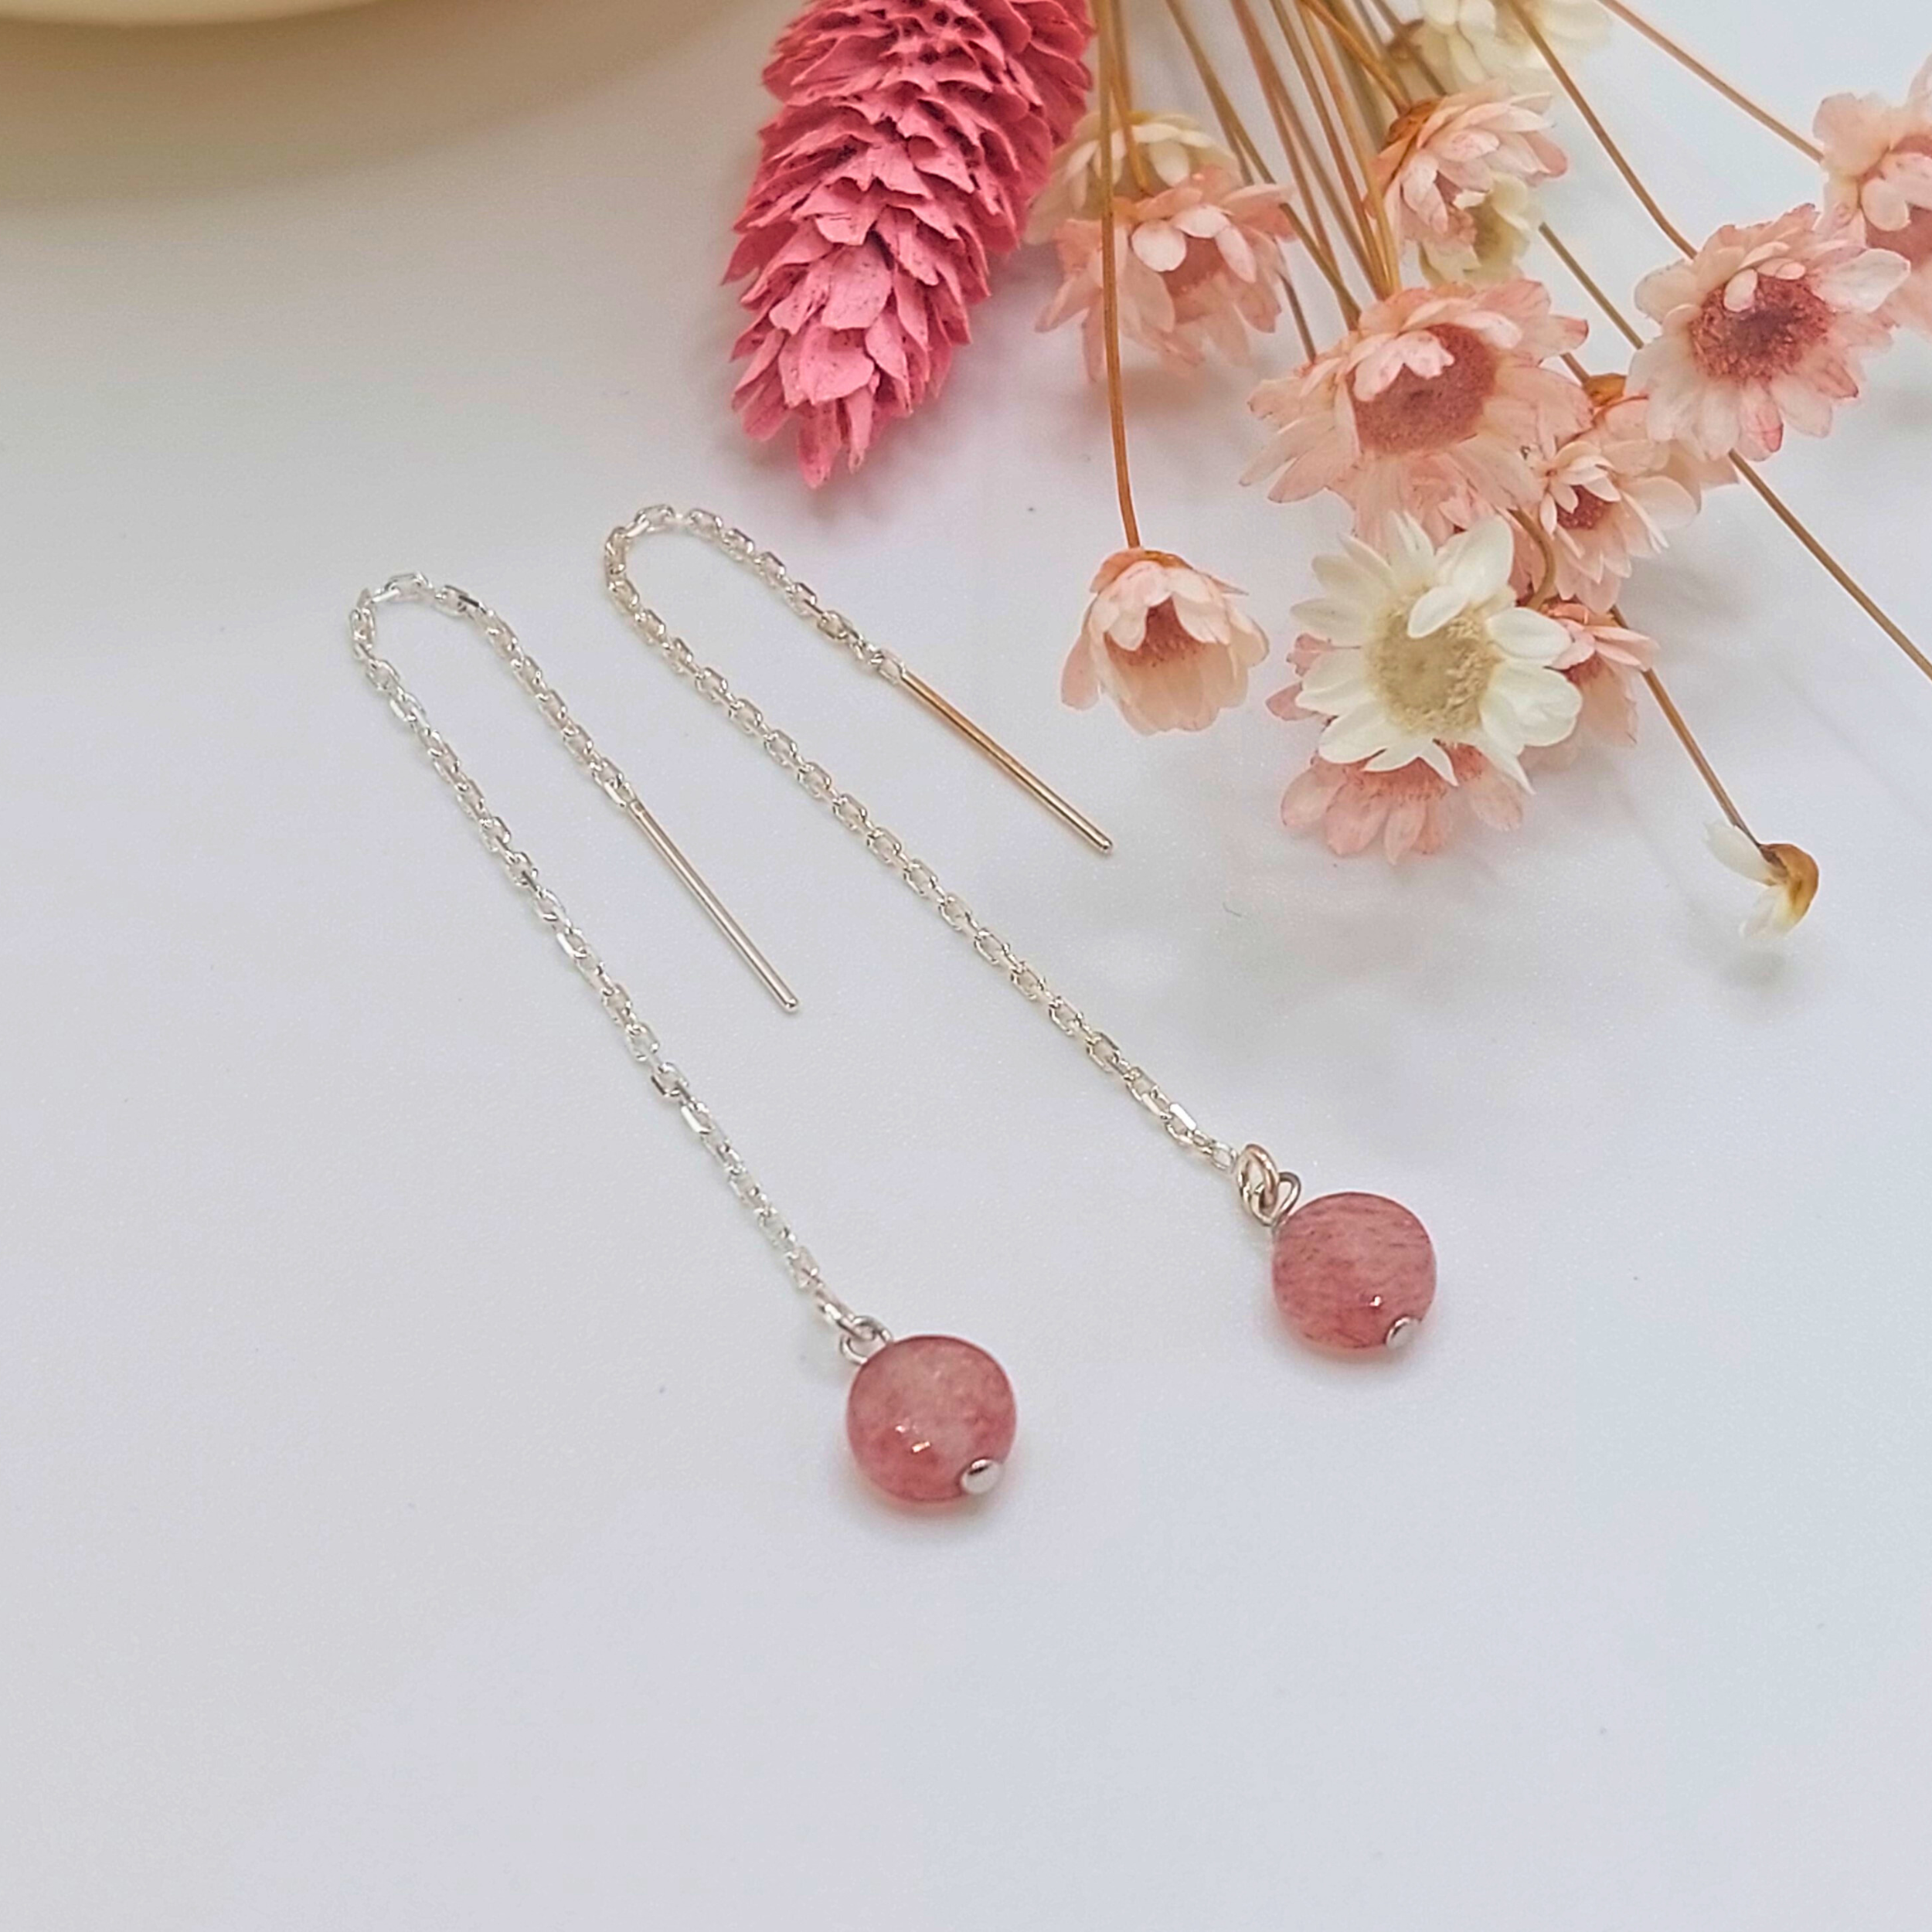 boucles-d-oreilles-pendantes-chaines-argent-925-quartz-fraise-l-insolente-bijoux